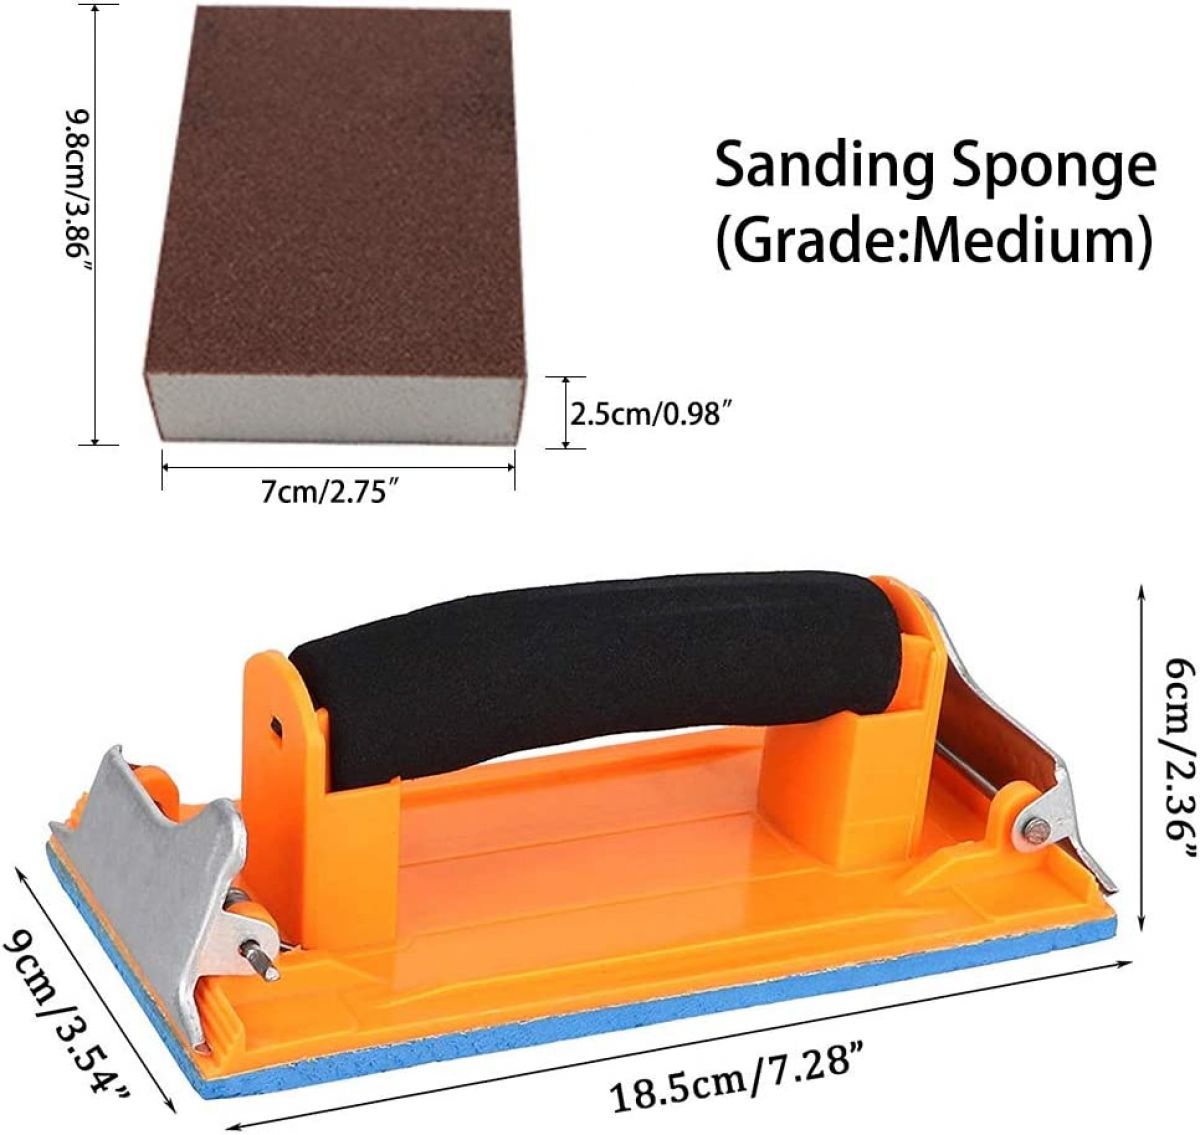 Sandpaper holder + Sanding sponge + sandpaper 56 pcs